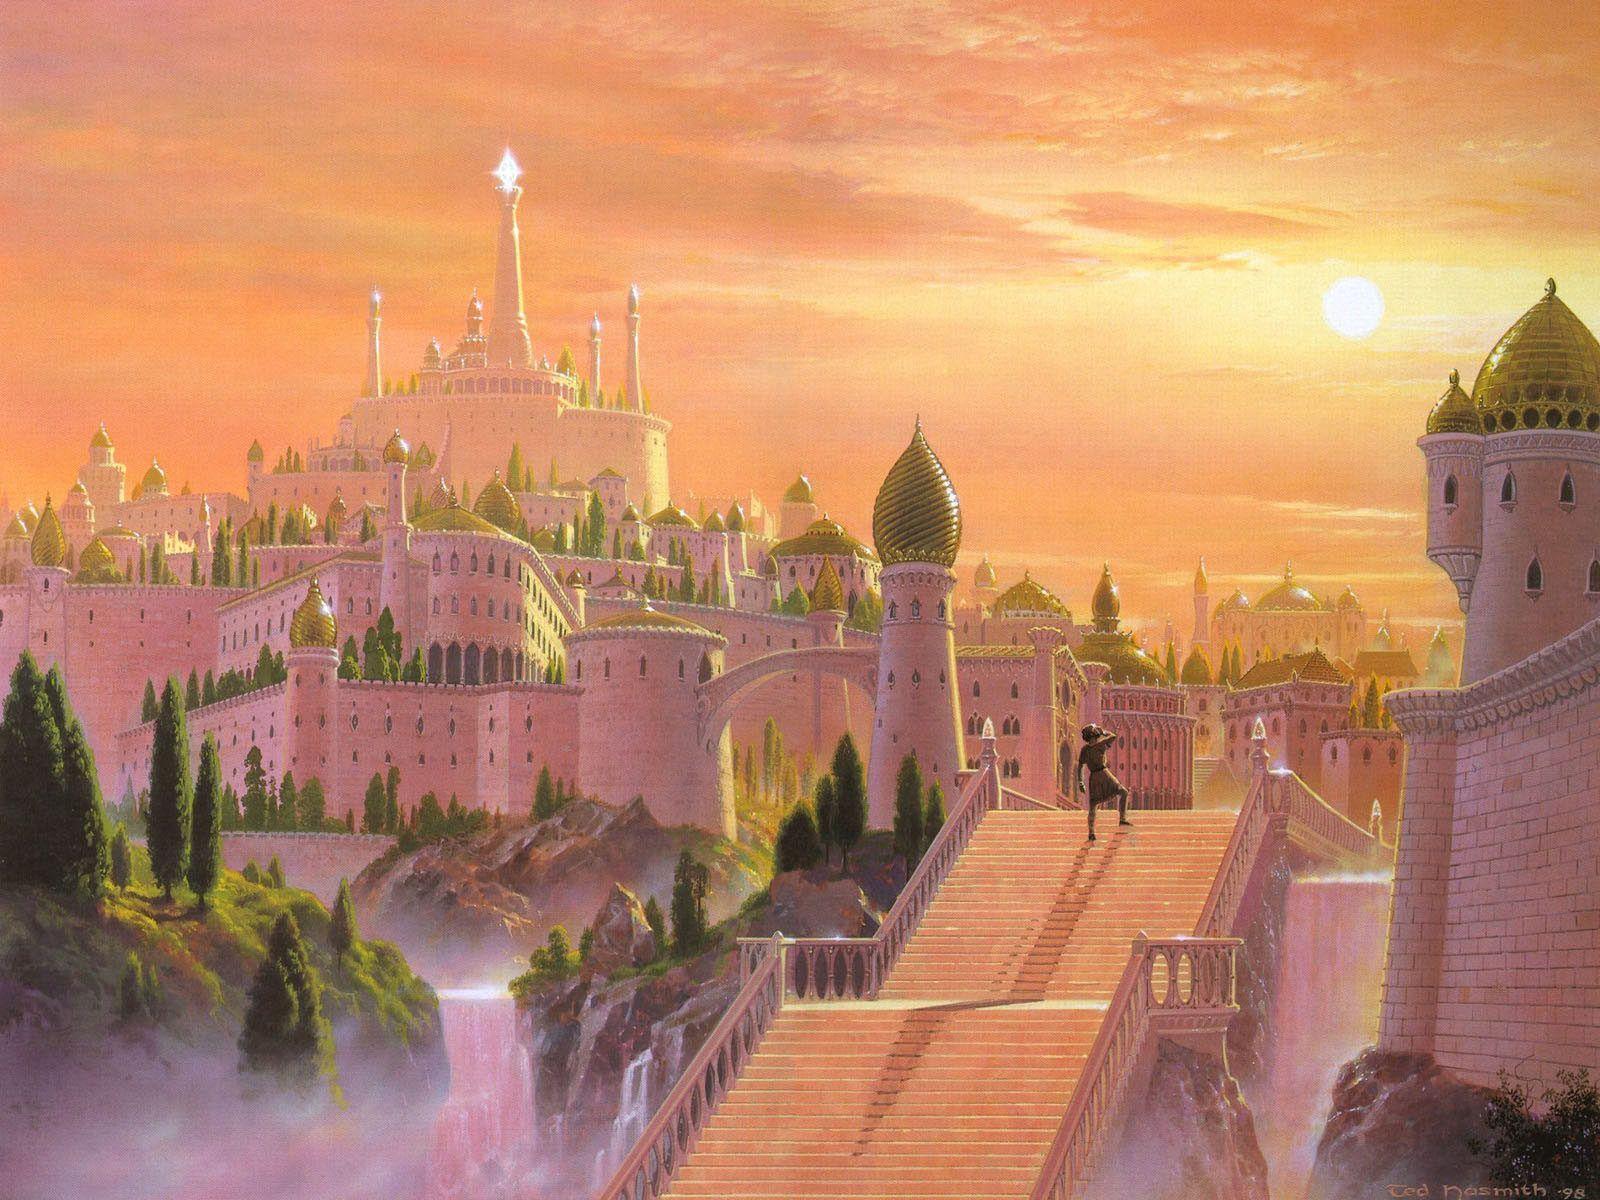 Fairytale Castle Wallpaper Image & Picture